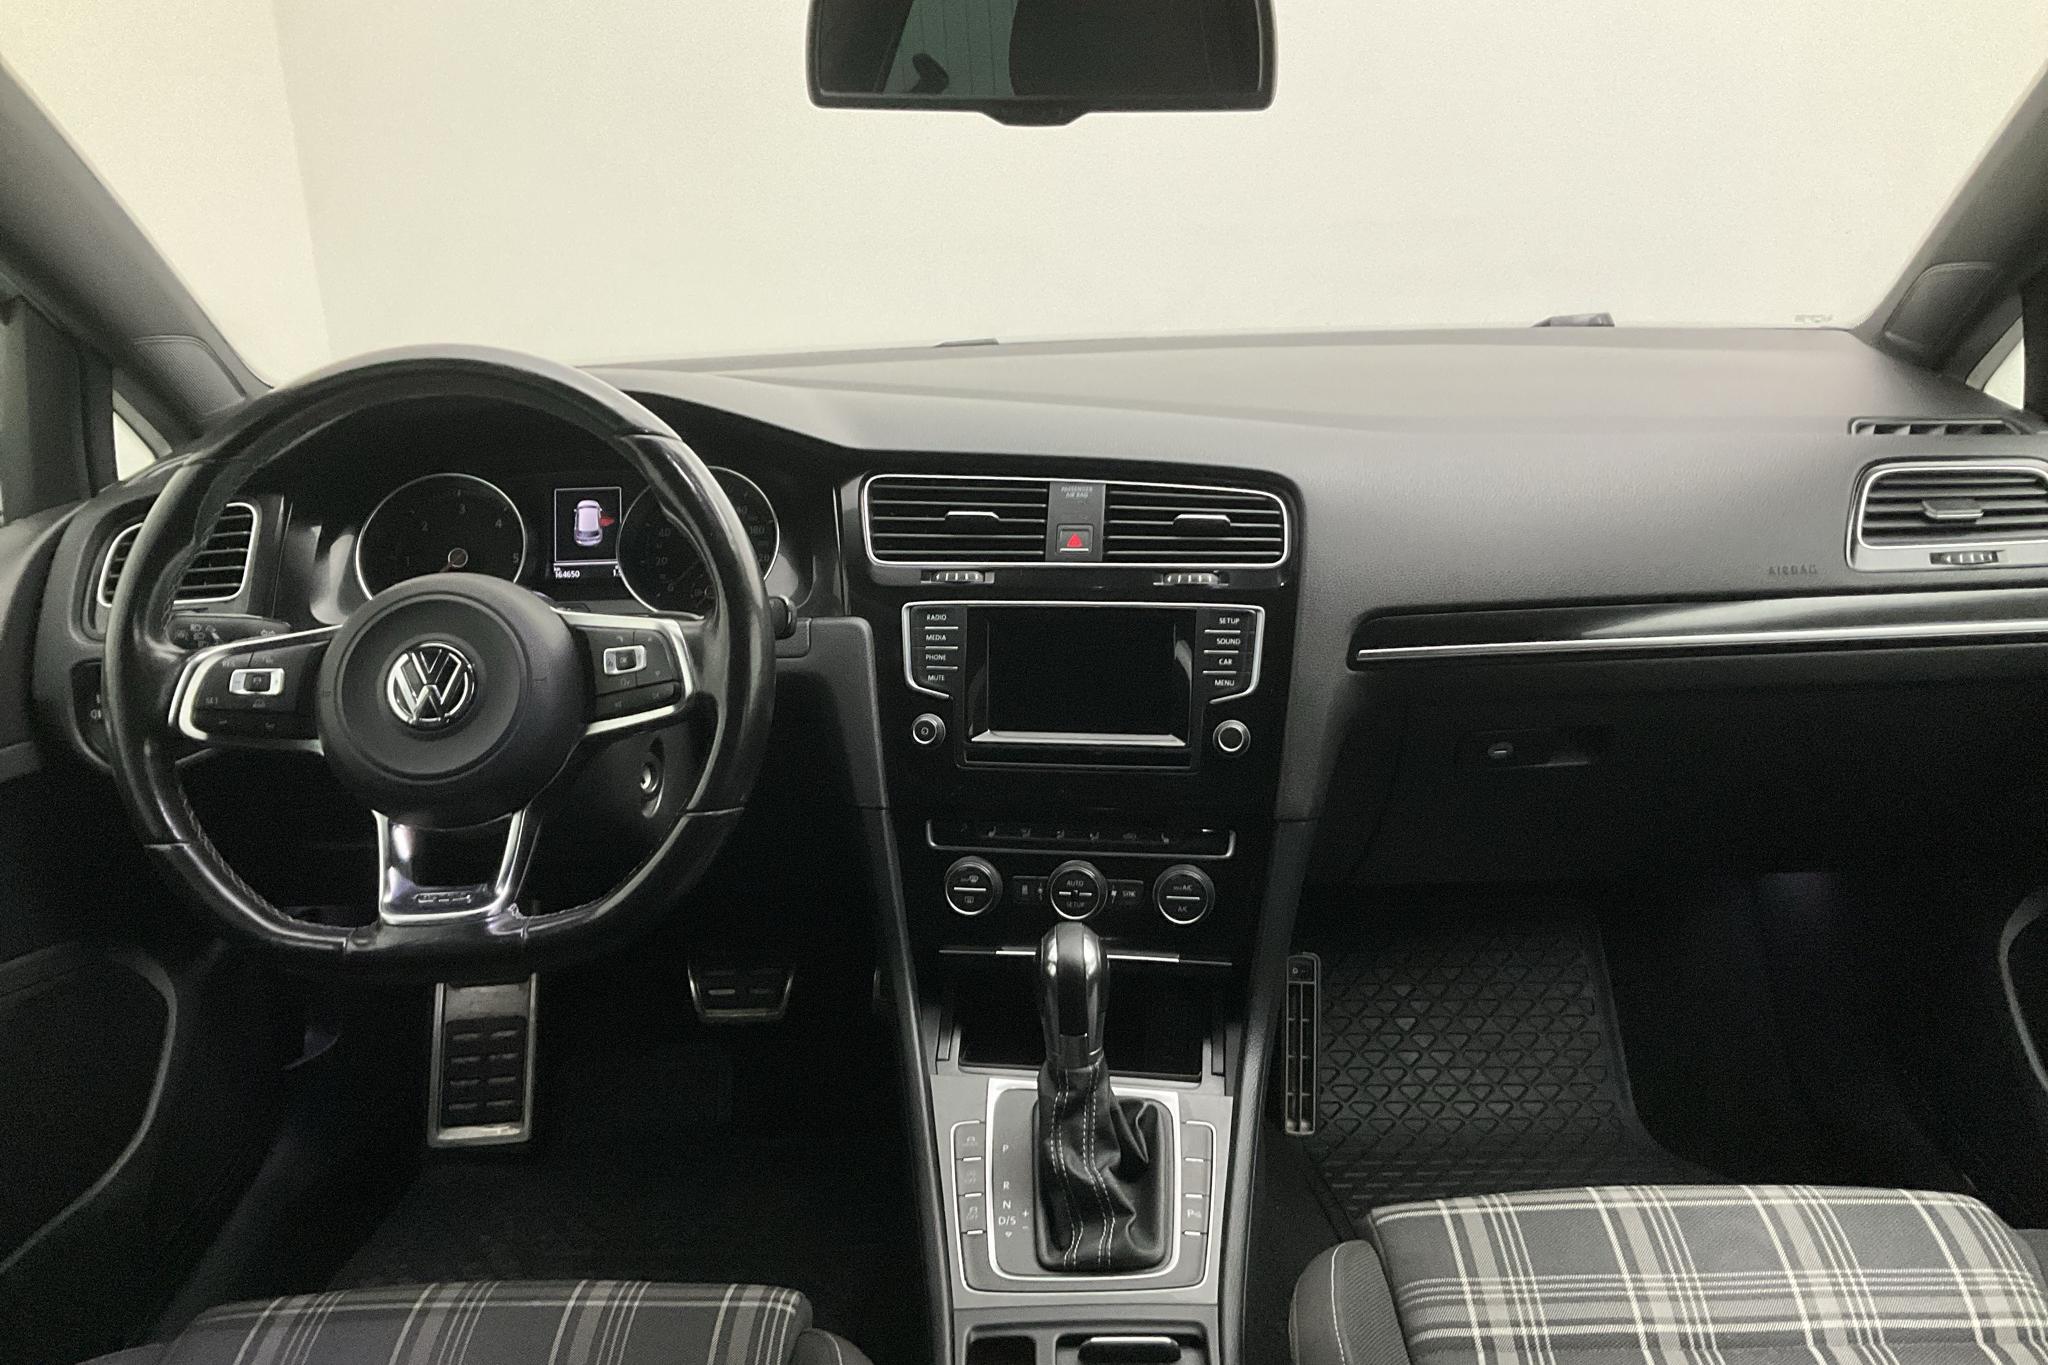 VW Golf VII GTD 2.0 5dr (184hk) - 164 650 km - Automatic - silver - 2014